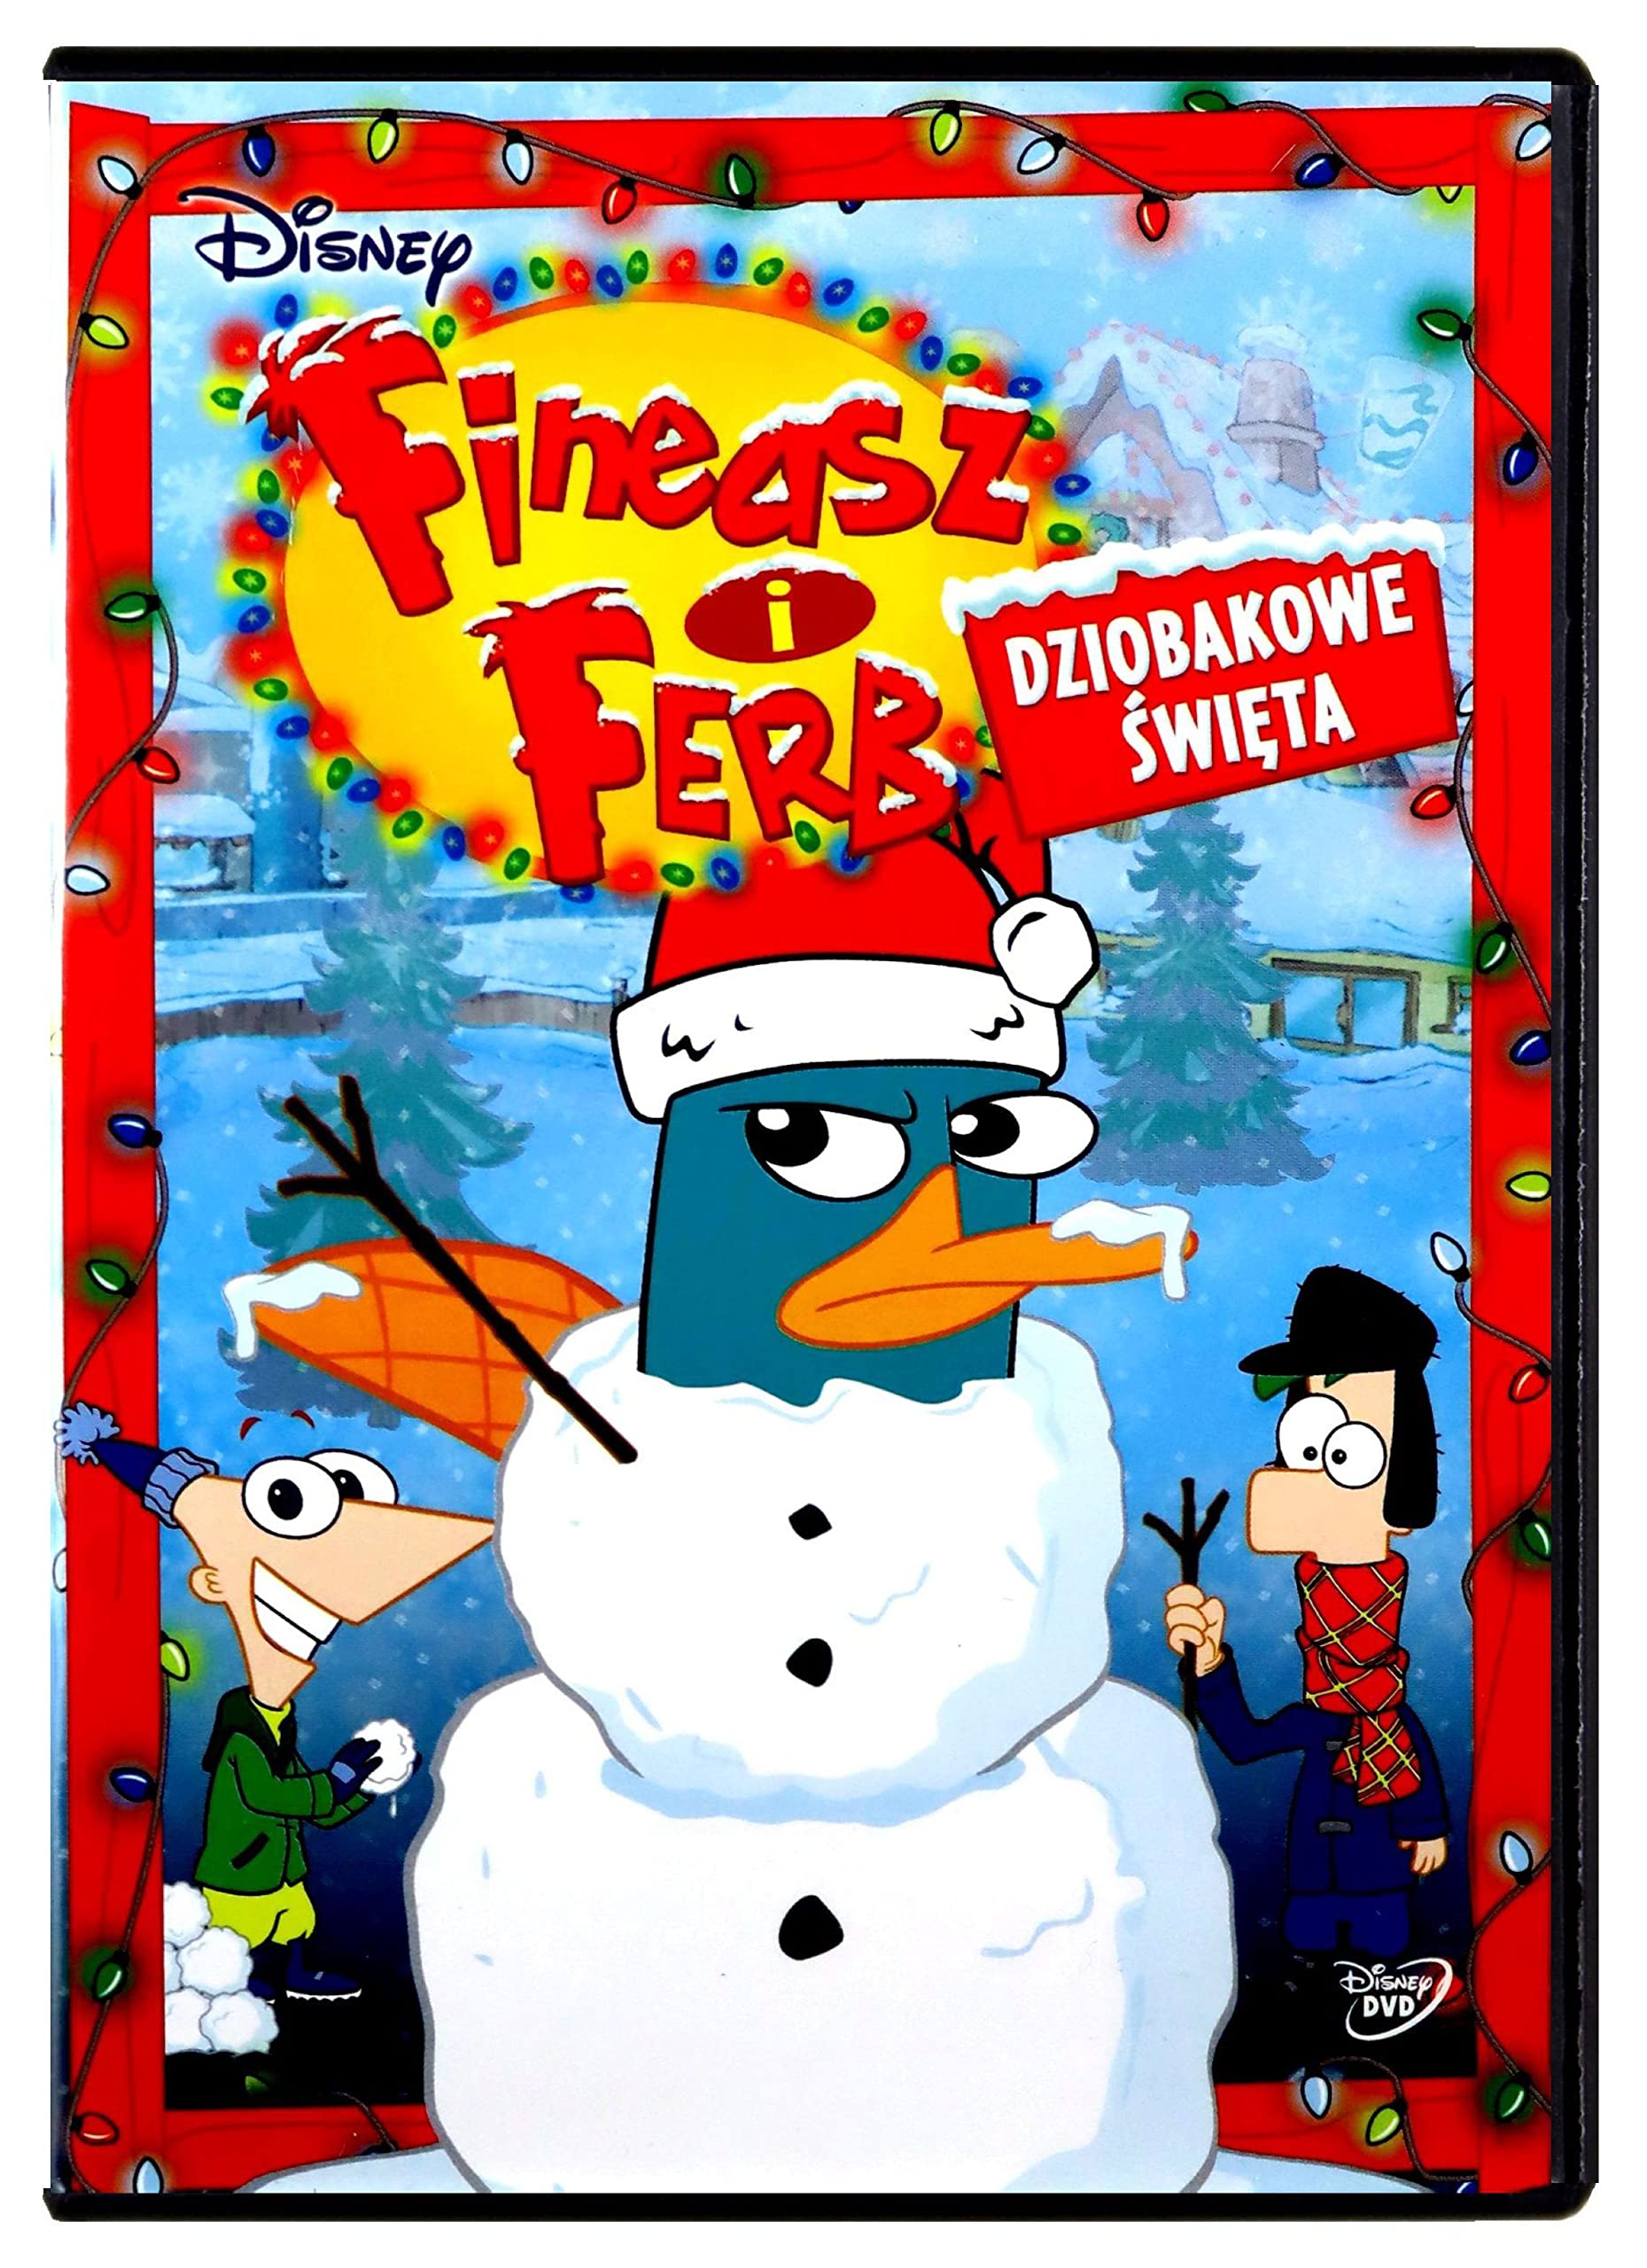 Phineas und Ferb [DVD] [Region 2] (Deutsche Sprache. Deutsche Untertitel)